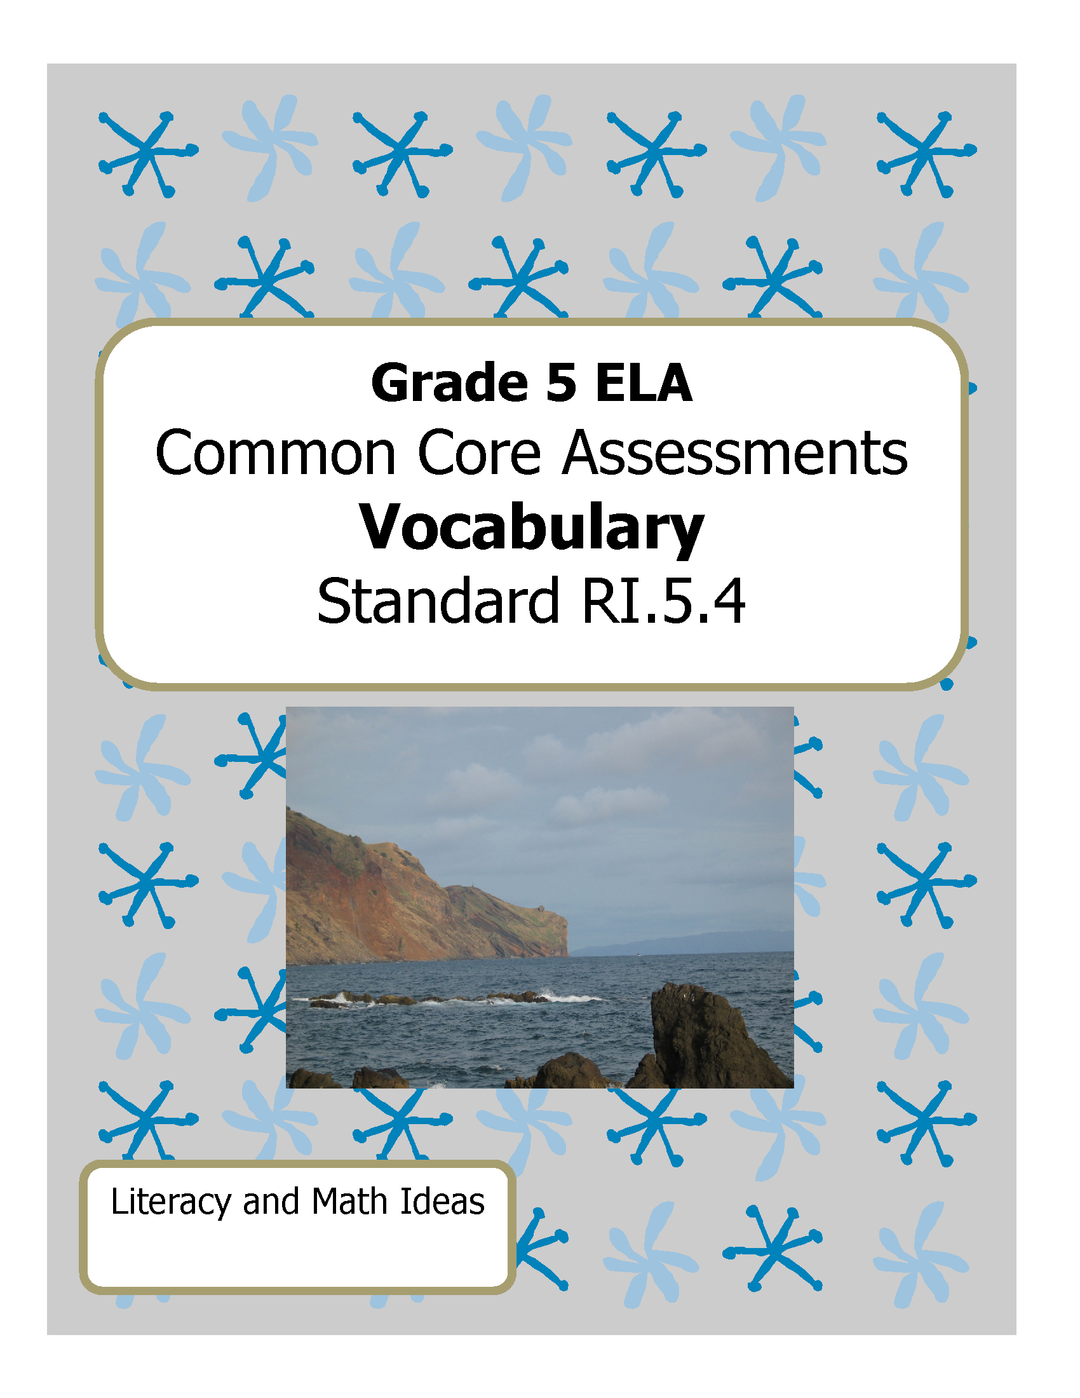 Grade 5 Common Core Assessments: Vocabulary RI.5.4